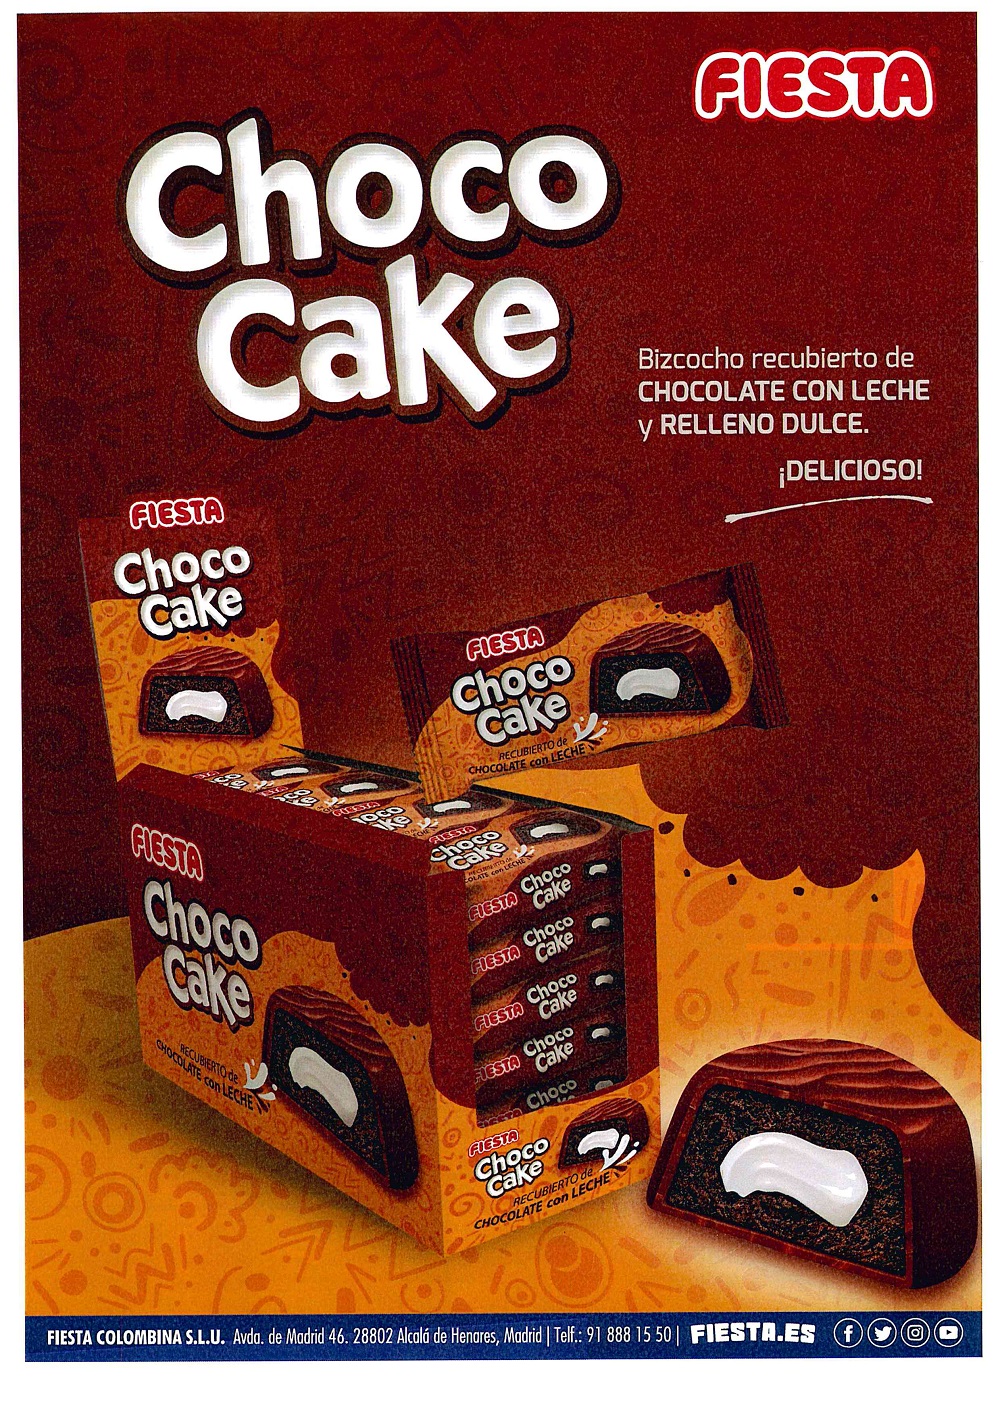 Choco Cake